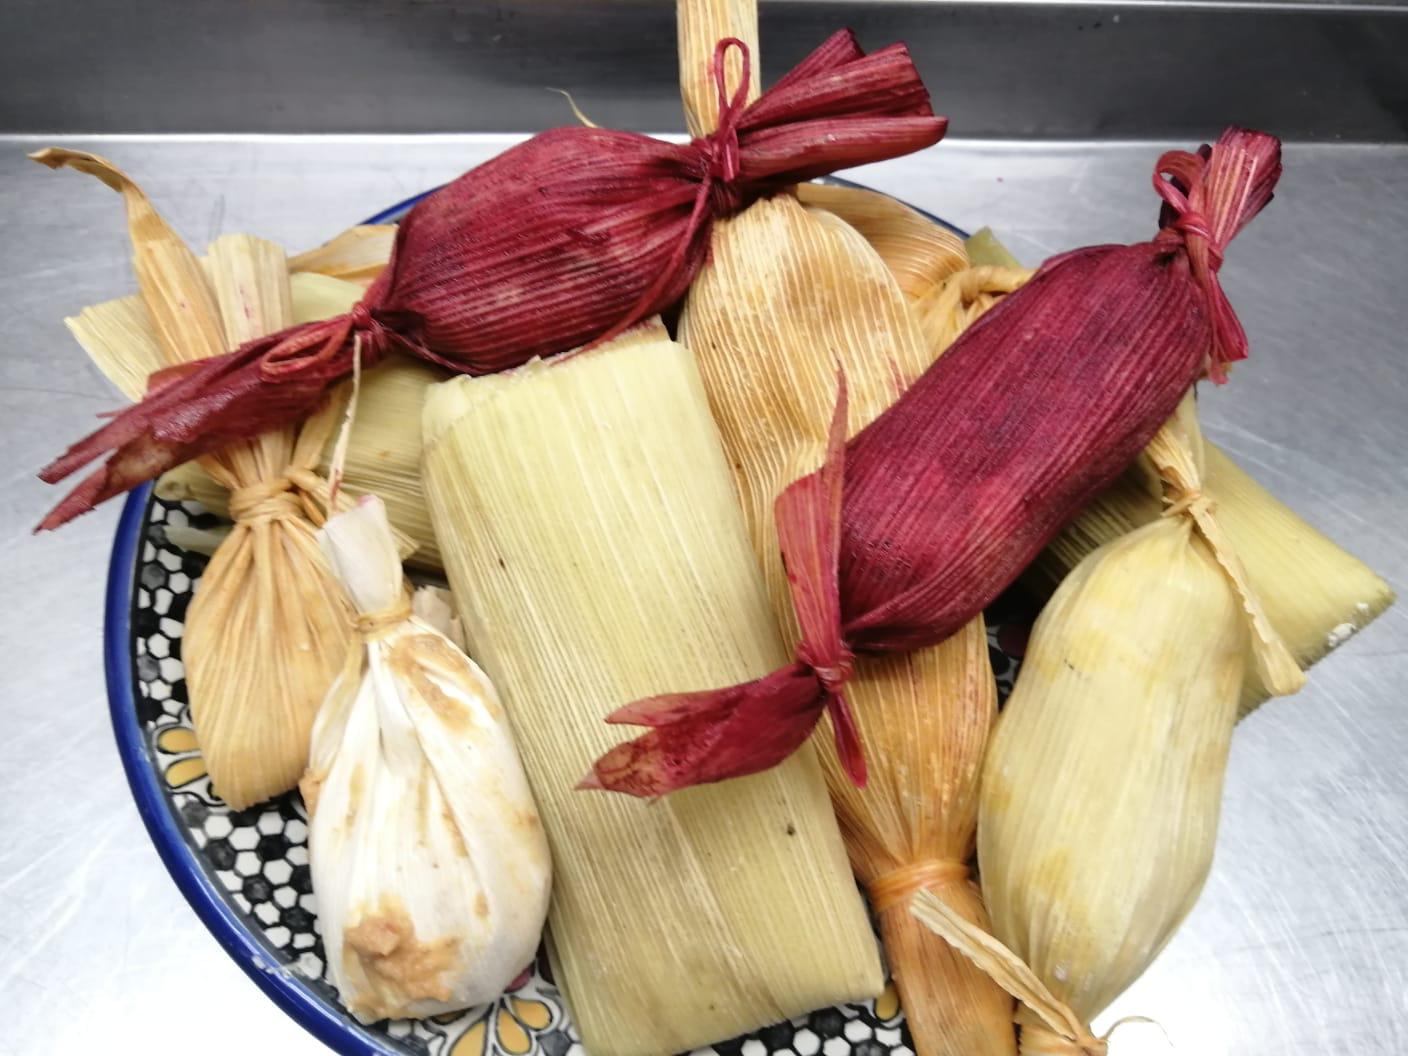 $!Tamales colorados, una delicia culinaria del sur de Sinaloa